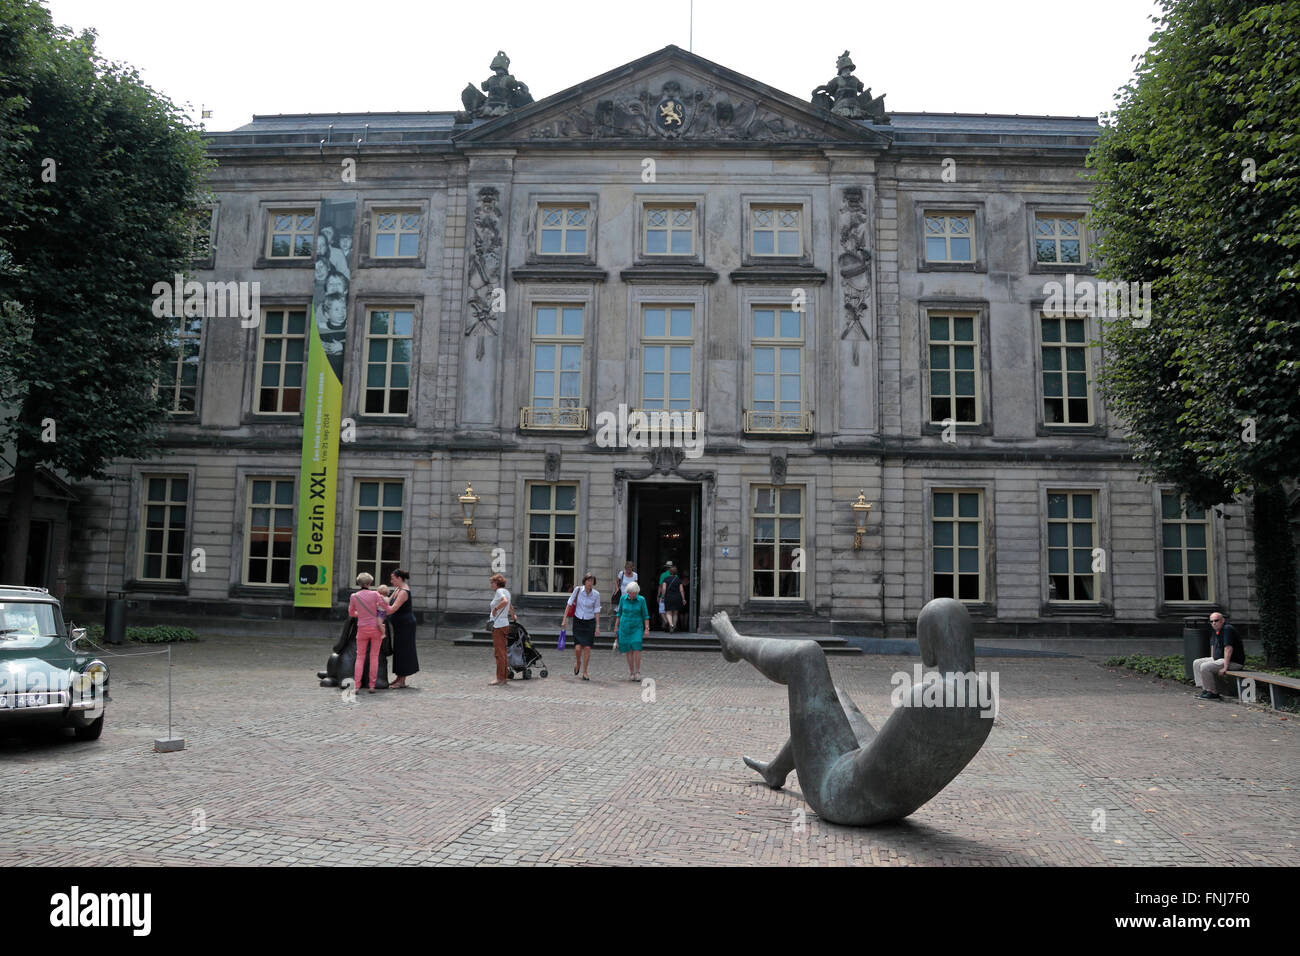 The Het Noordbrabants Museum in Den Bosch, Netherlands. Stock Photo